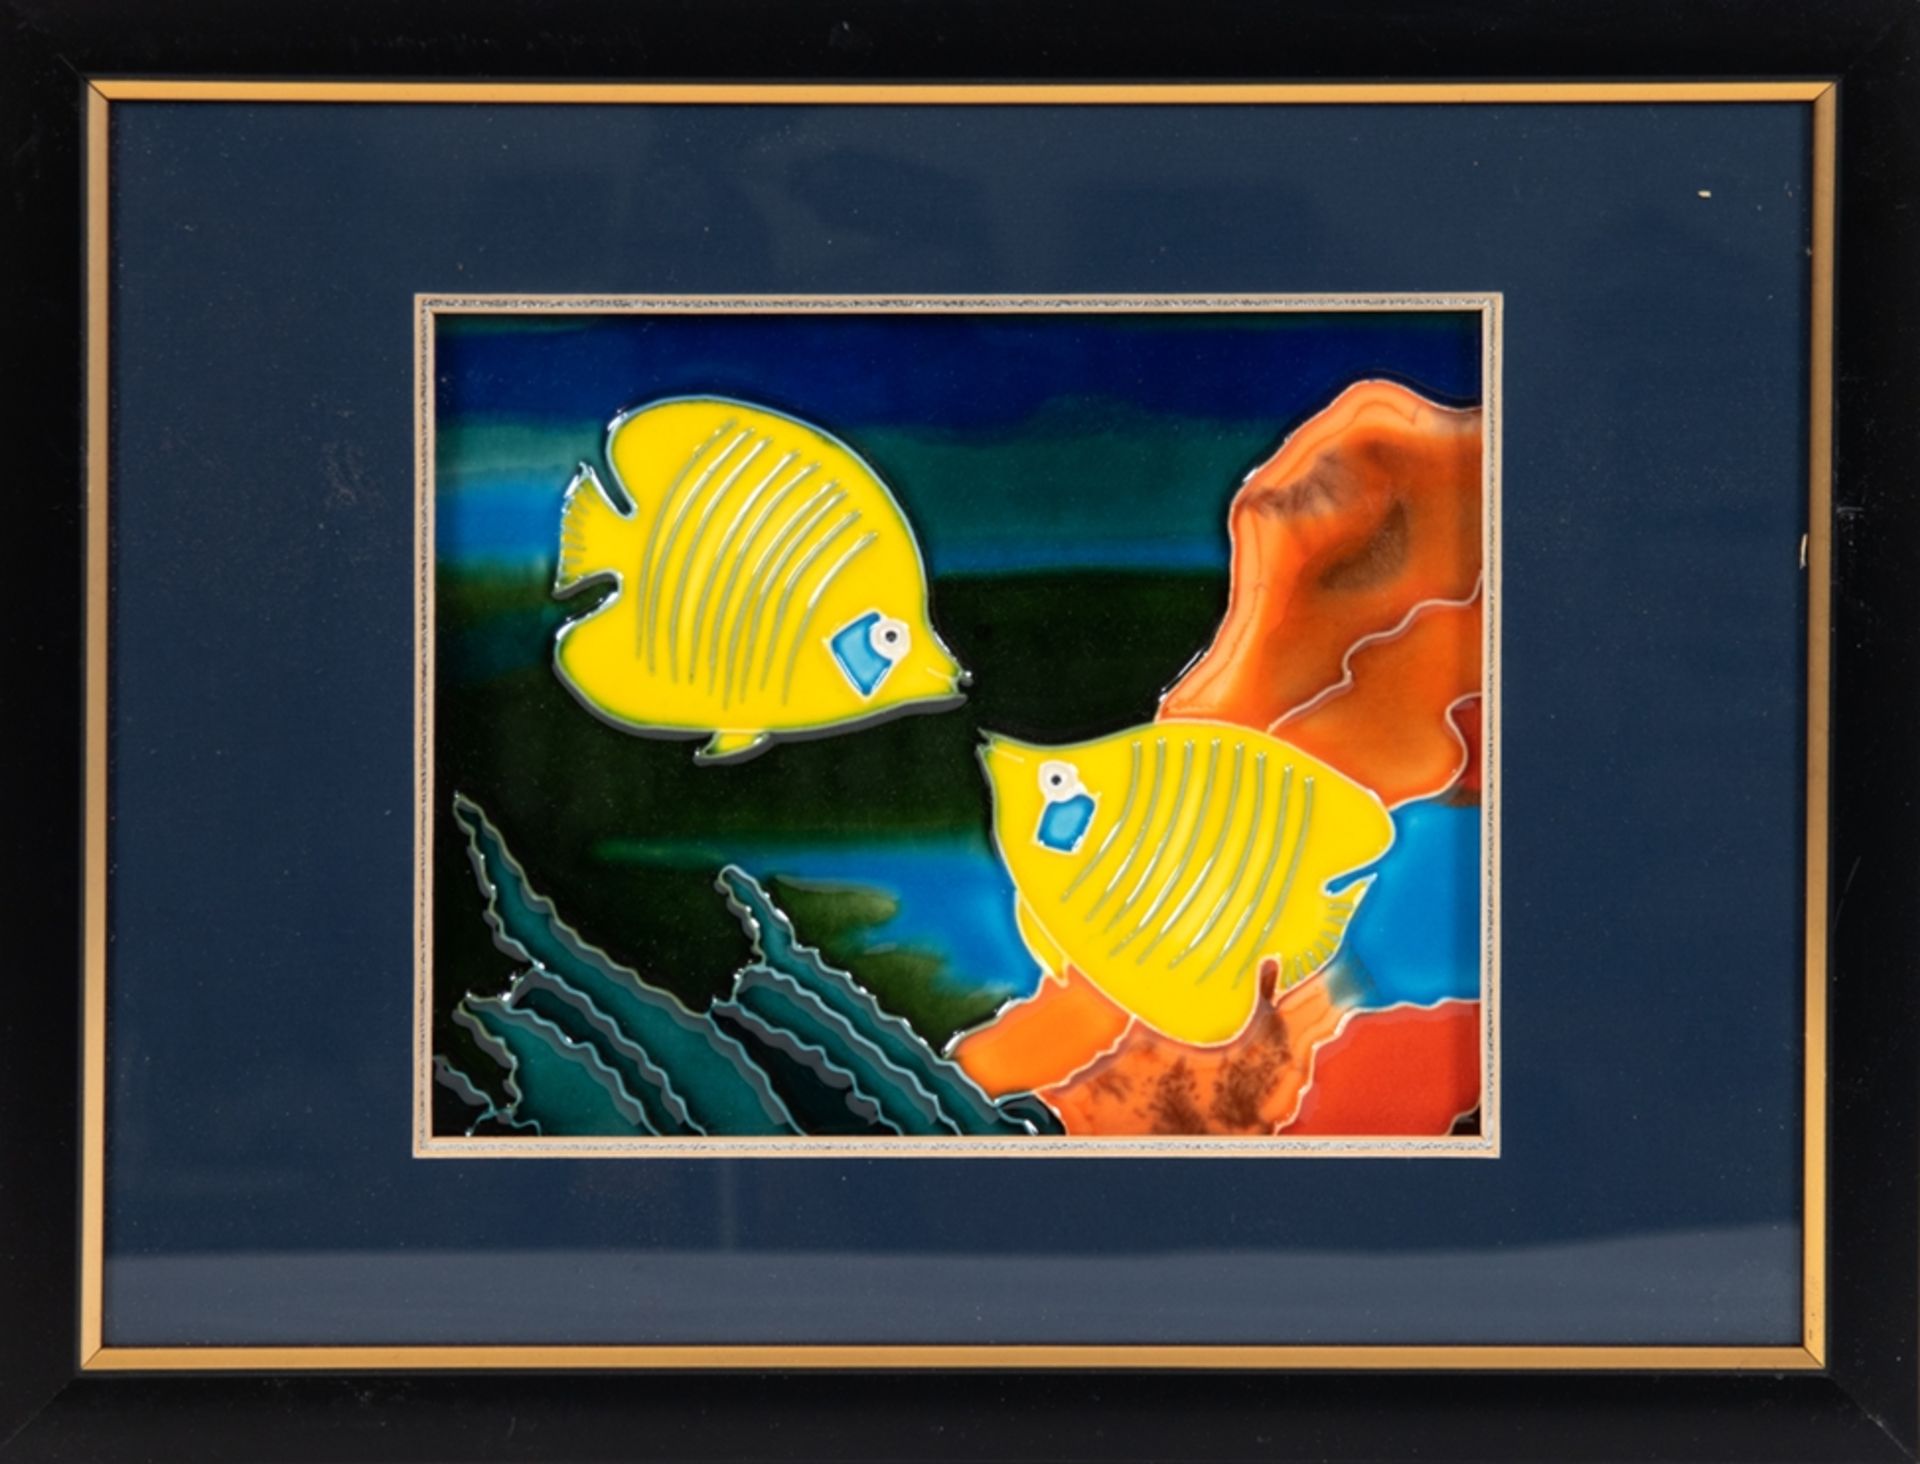 Keramikplatte mit Fischmotiv "Maskenfalterfisch", polychrome Malerei, glasiert, 18x23 cm, hinter Gl